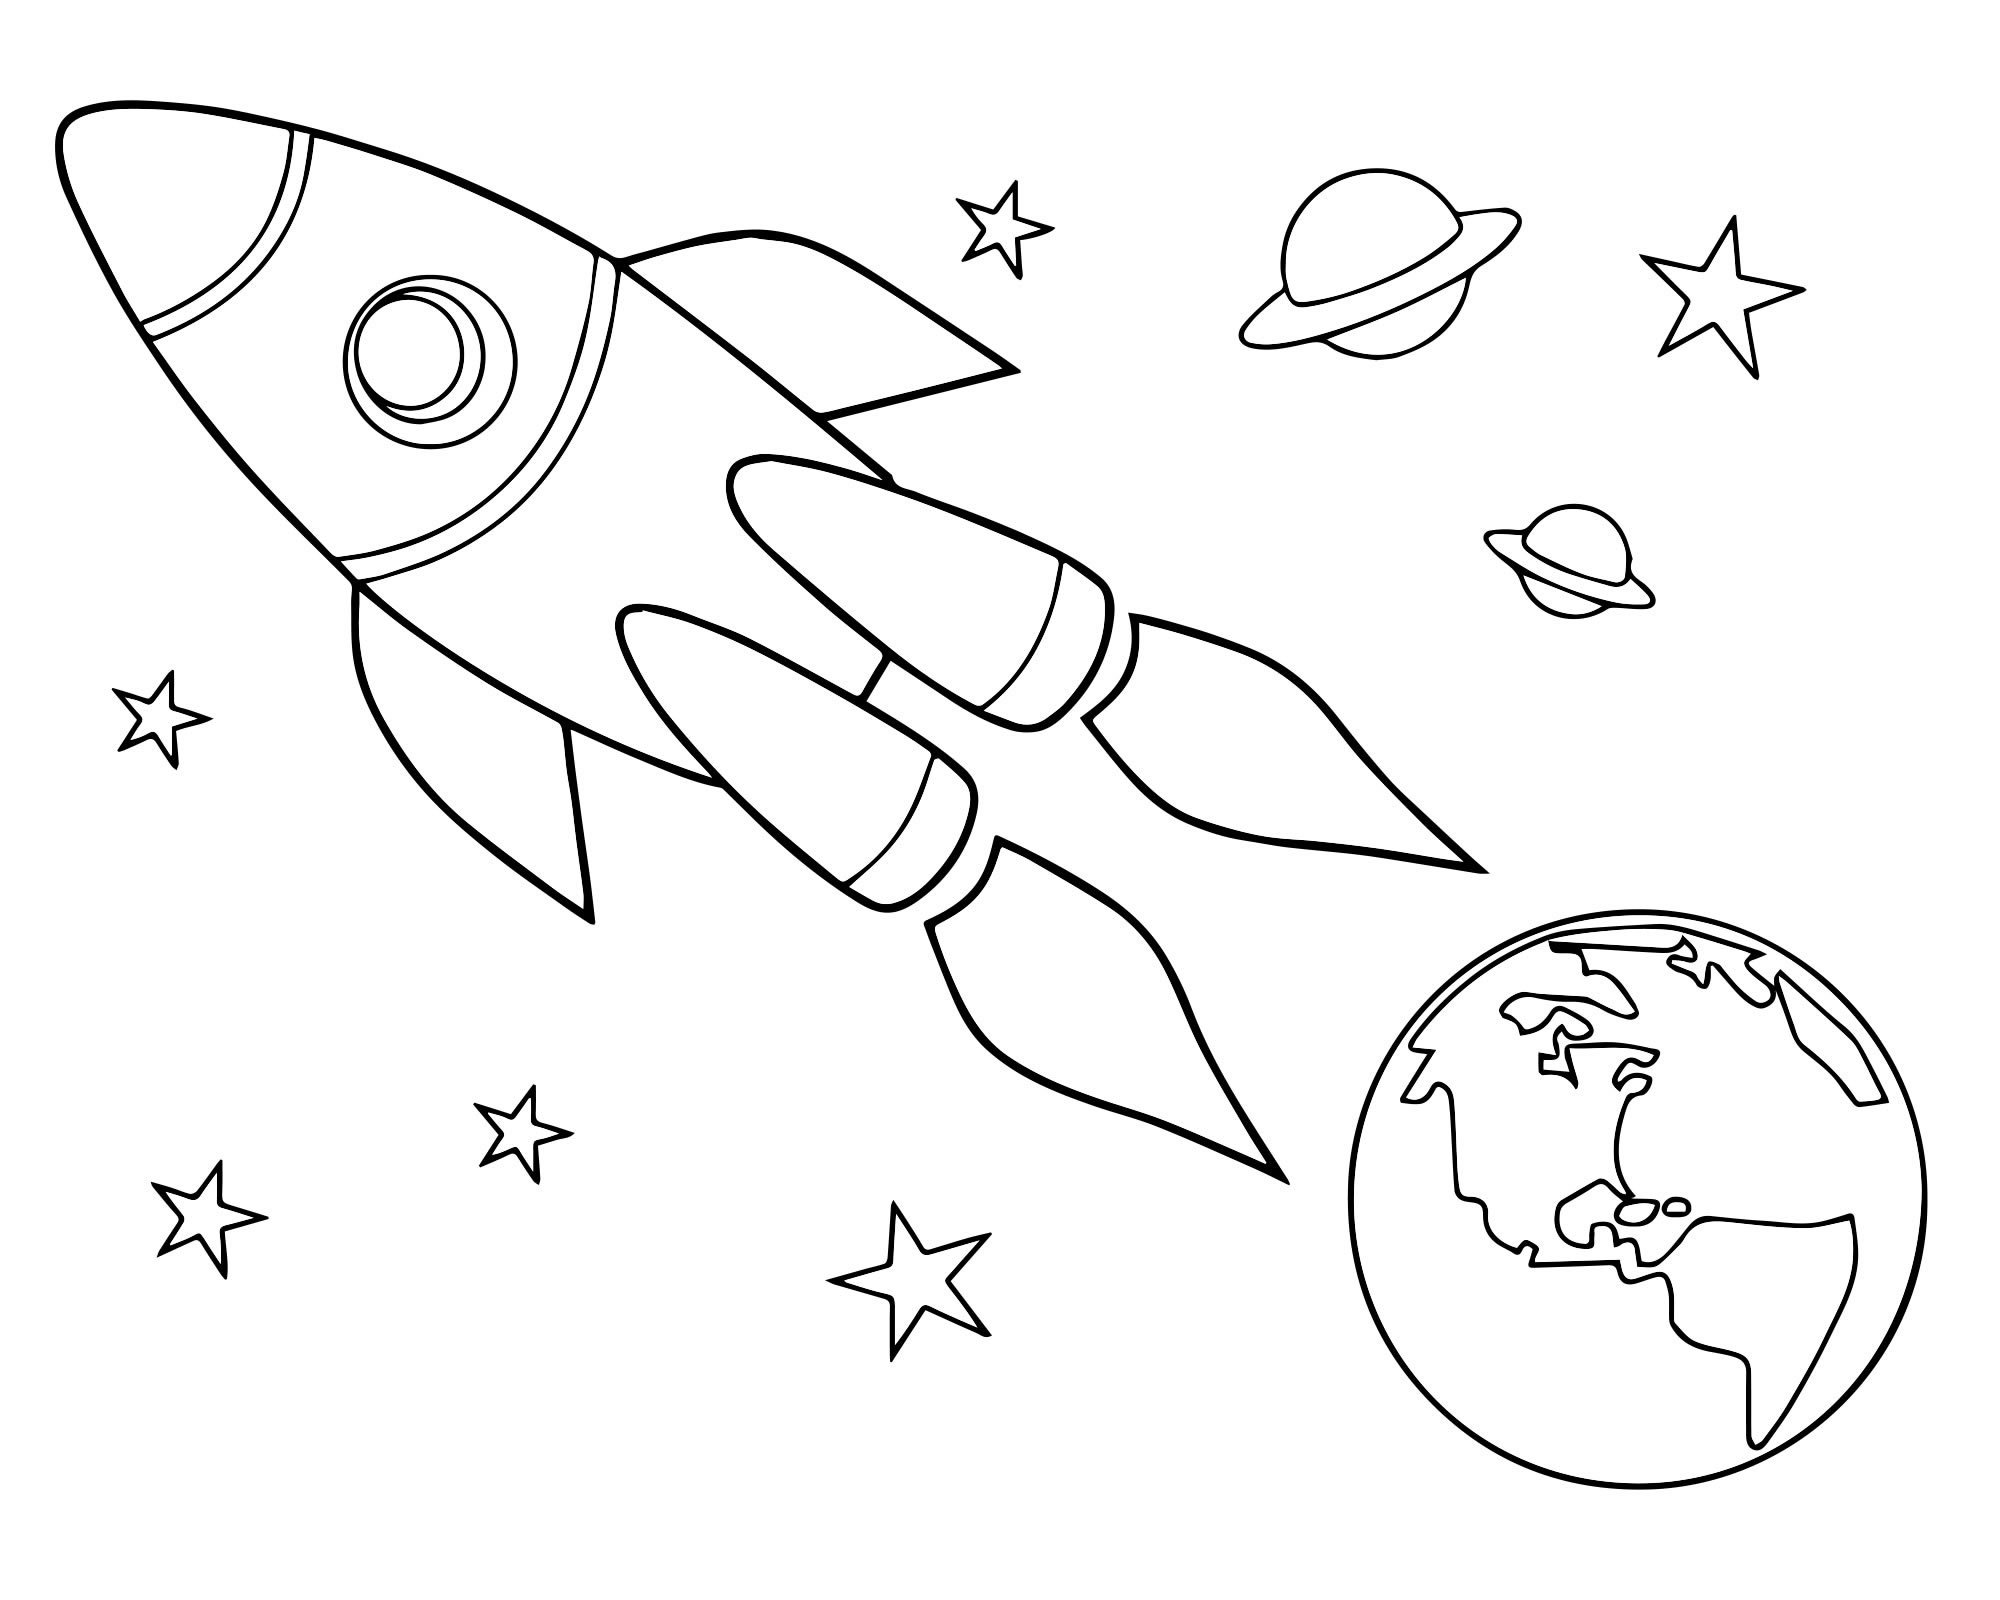 Космос раскраска для детей. Раскраска день космонавтики для детей. Трафареты на тему космоса для детей. Раскраска для малышей. Космос. Рисунки на день космонавтики легкие для срисовки